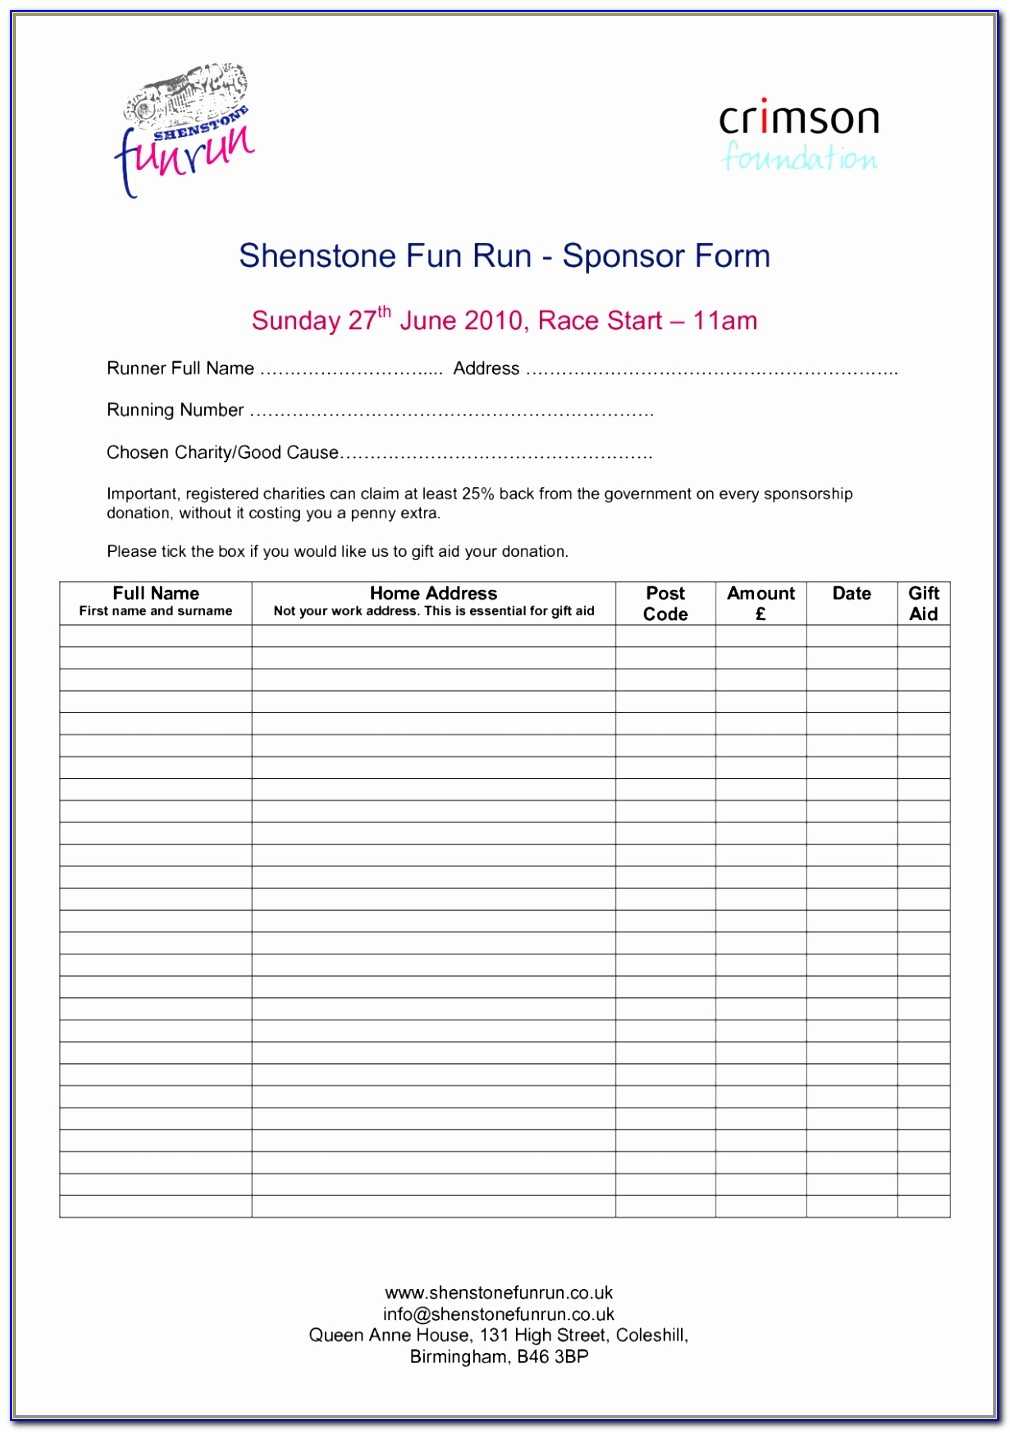 Sample Sponsorship Form Informatics Pharmacist Sample Resume Intended For Blank Sponsor Form Template Free